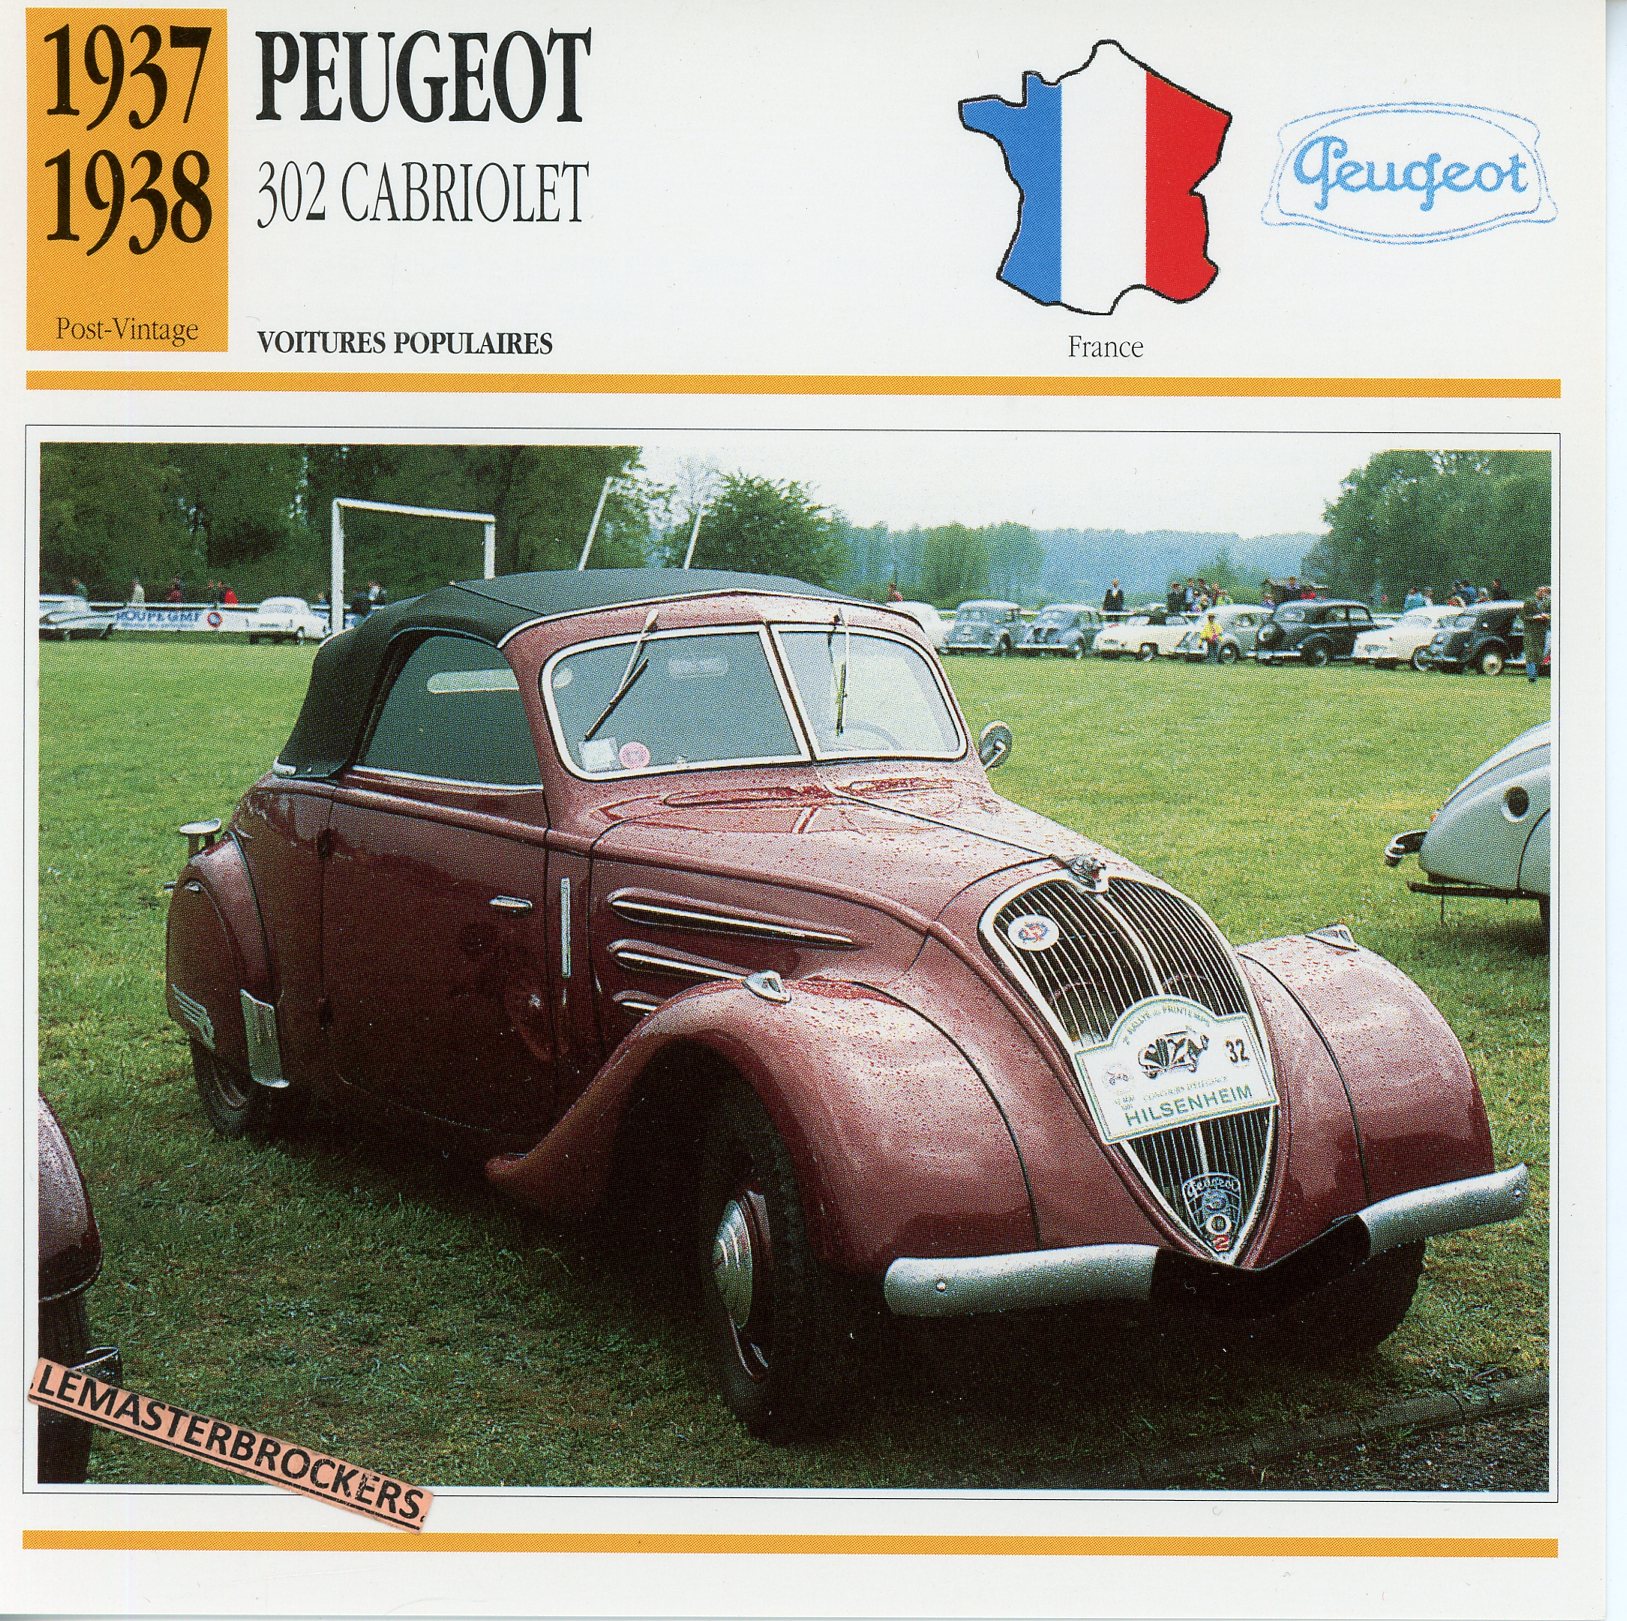 PEUGEOT-302-CABRIOLET-1937-1938-FICHE-AUTO-ATLAS-LEMASTERBROCKERS